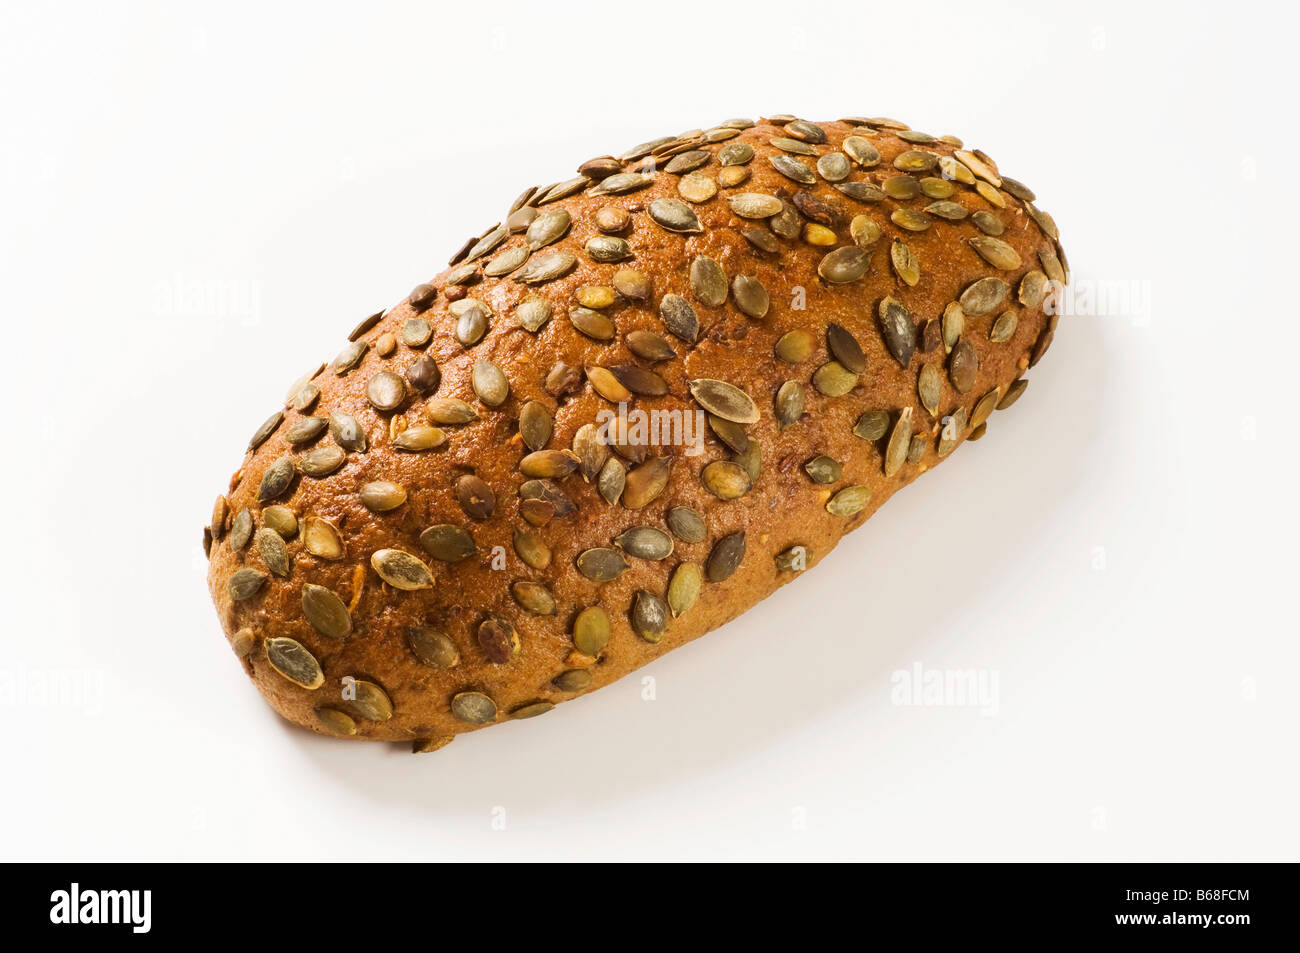 Filone di pane integrale con i semi di zucca Foto Stock